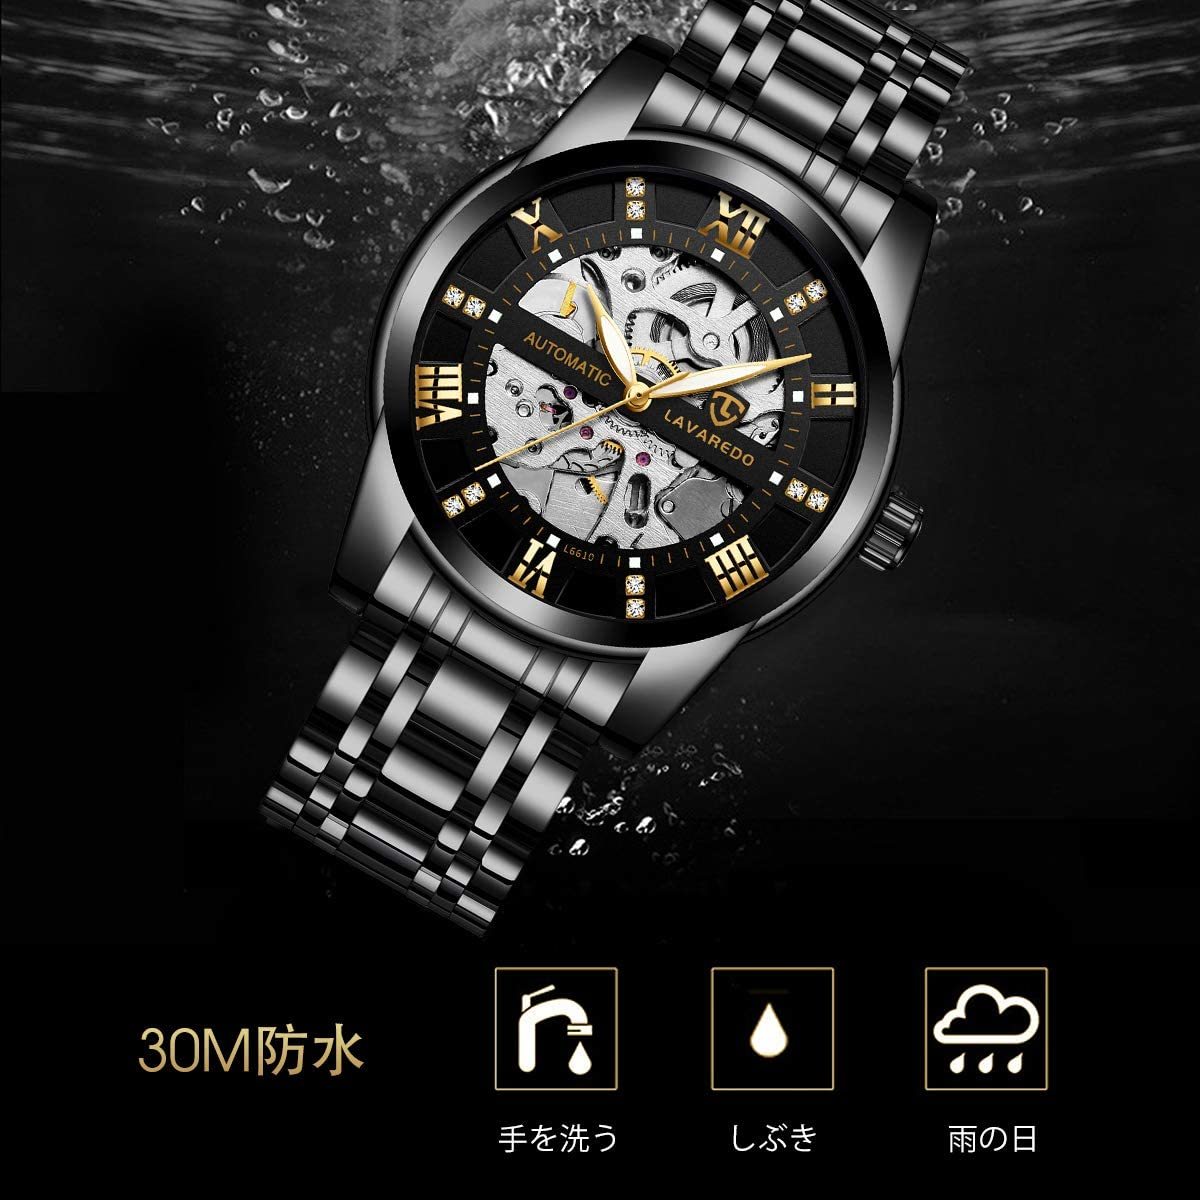  стильный автоматический наручные часы самозаводящиеся часы каркас черный нержавеющая сталь античный мужской модный часы bijine Swatch подарок 